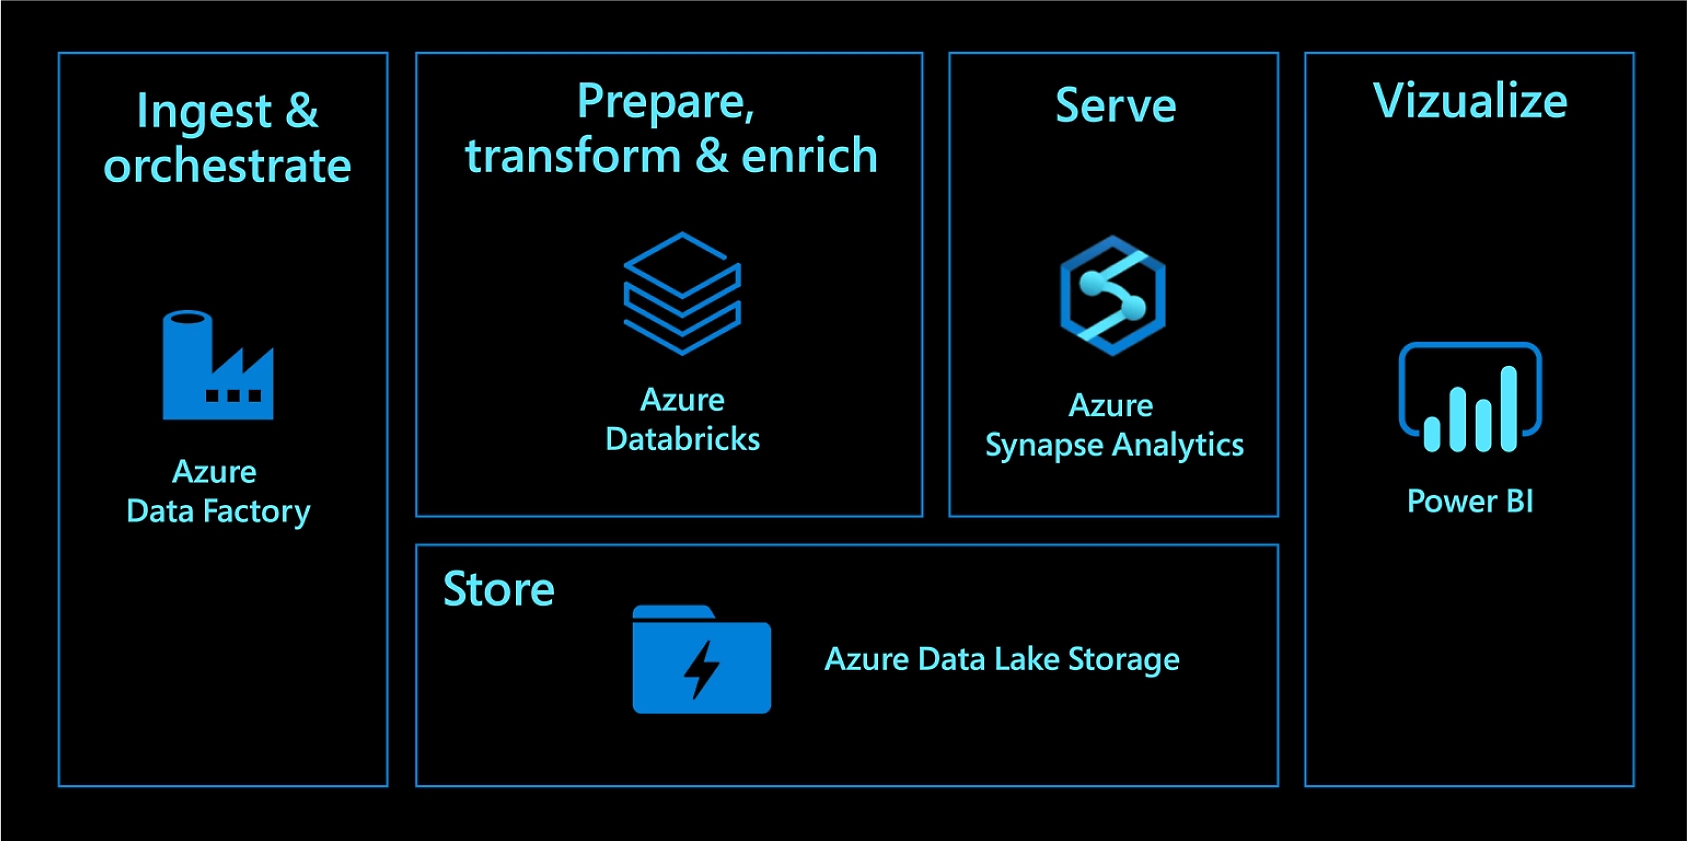 Ingérez et orchestrez les données avec Azure Data Factory. Préparez, transformez et enrichissez les données avec Azure Databricks. Servez les données avec Azure Synapse Analytics. Stockez les données avec Azure Data Lake Storage. Visualisez les données avec Power BI.